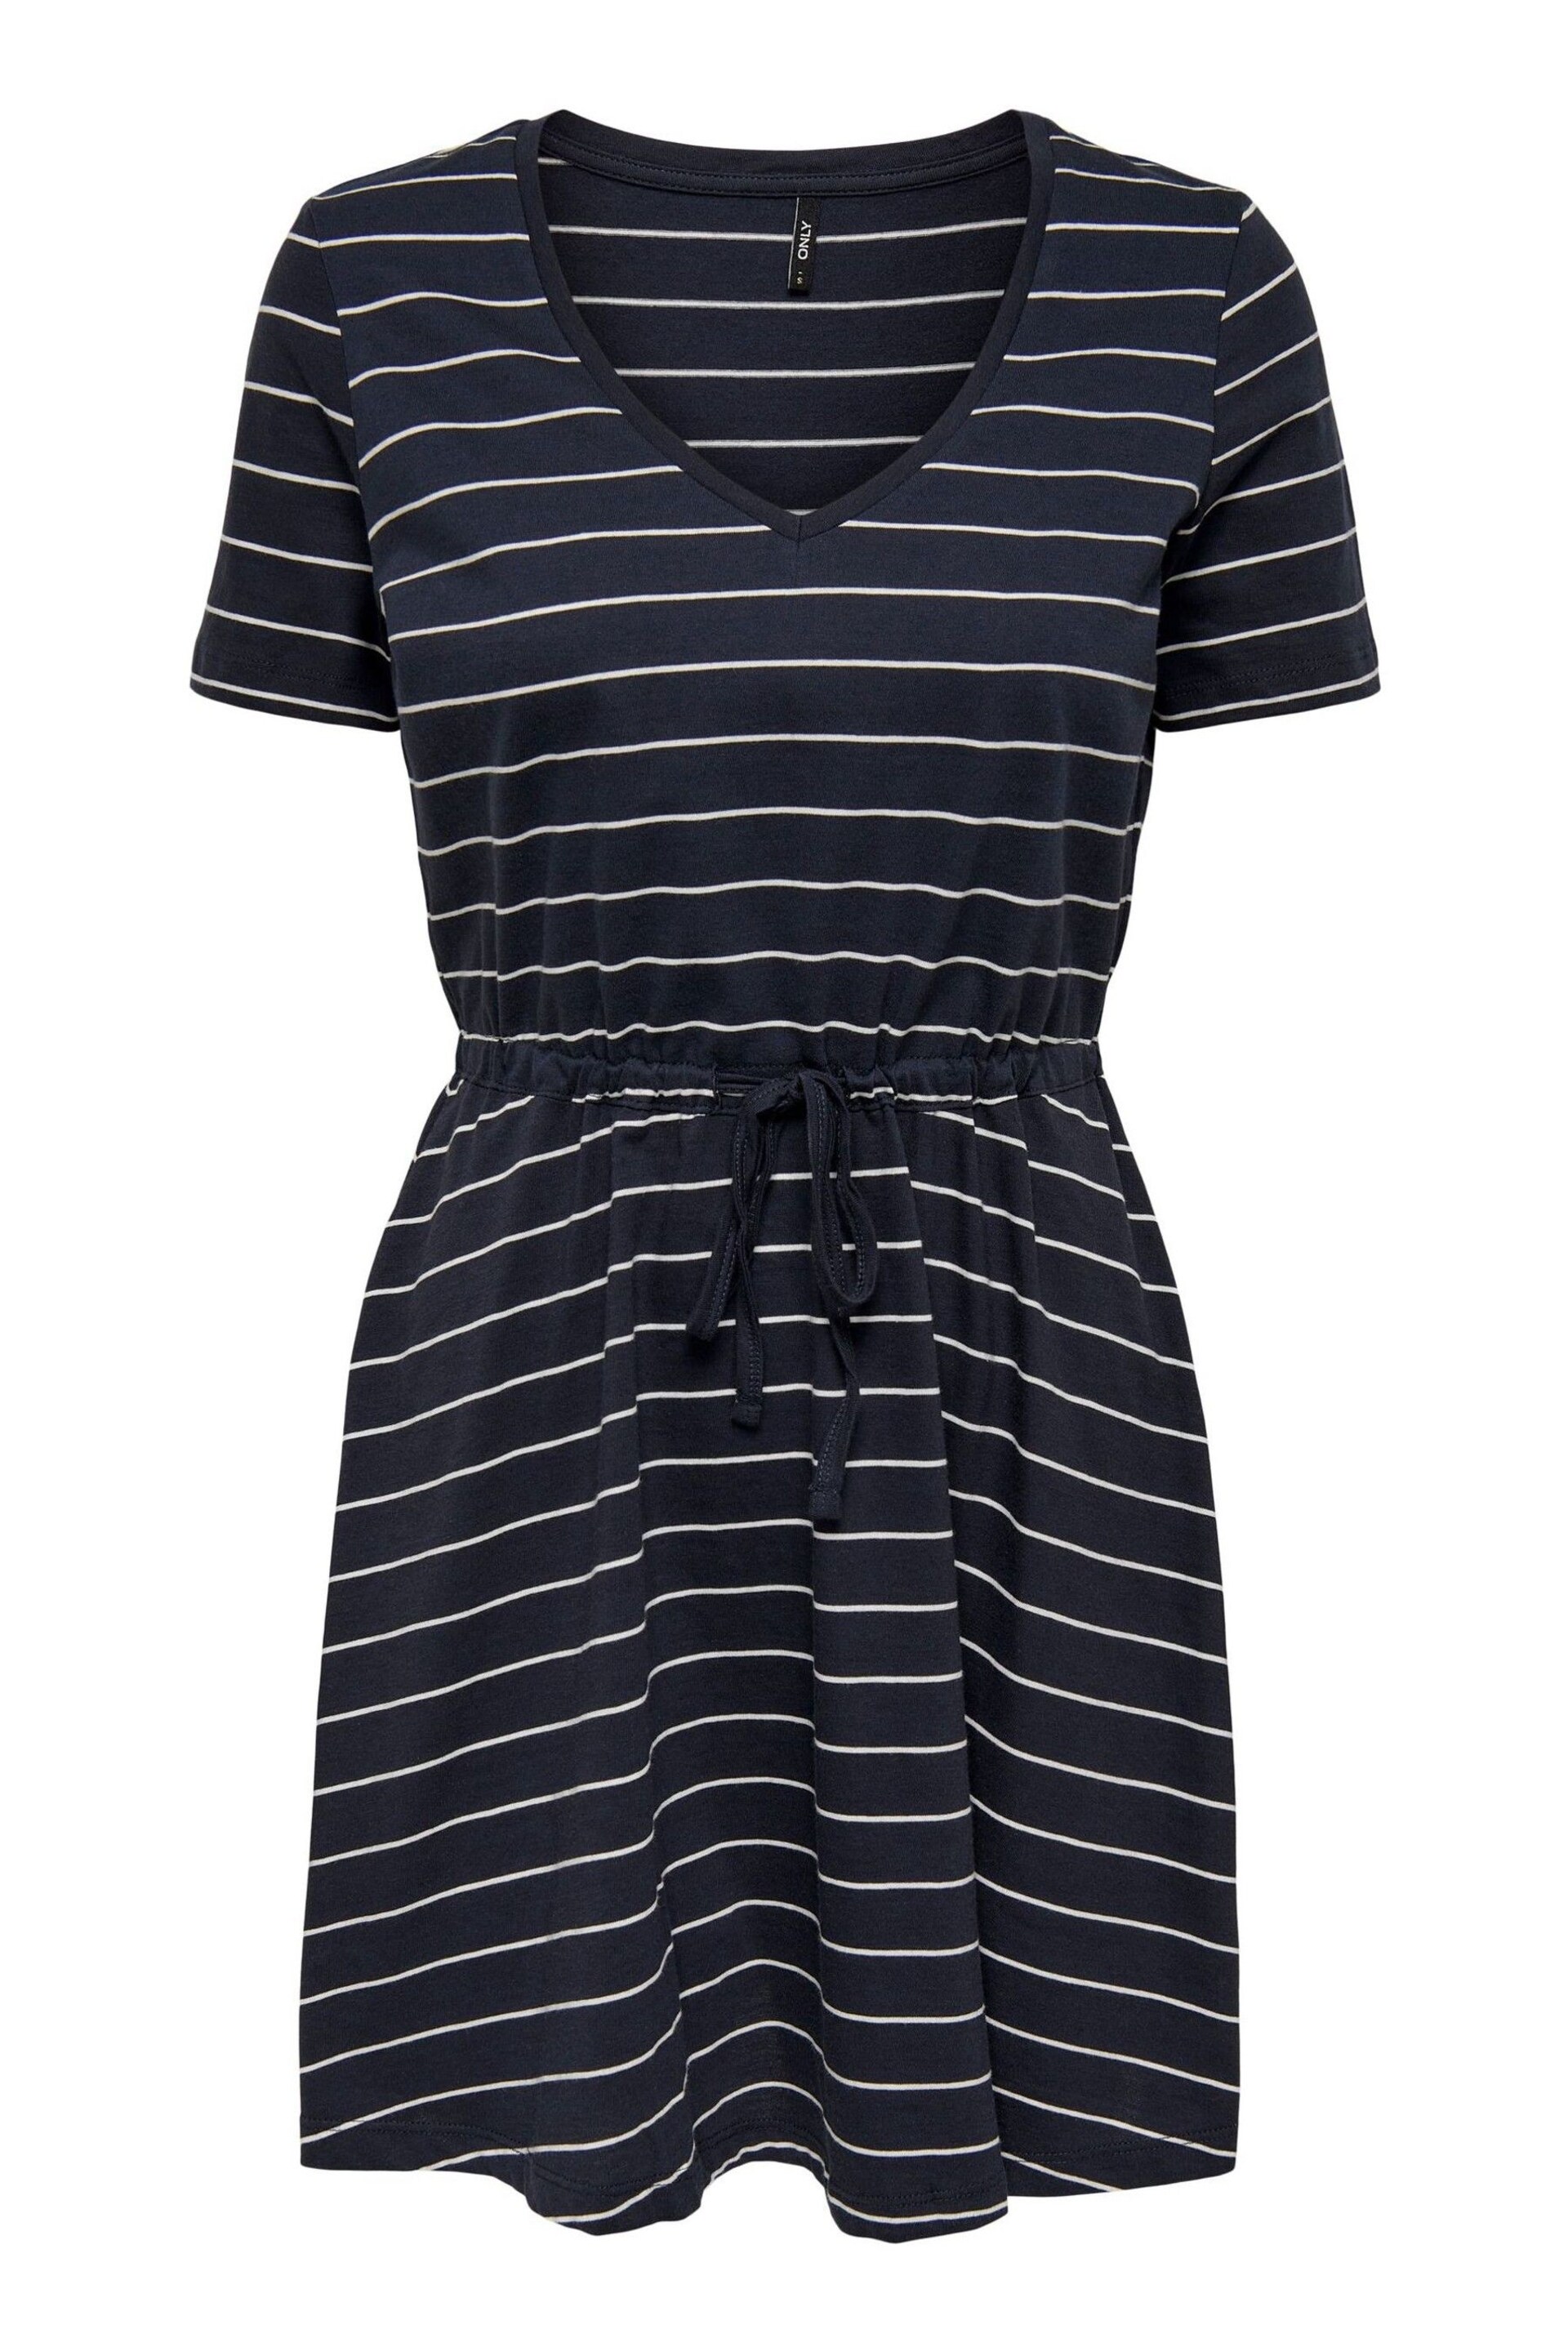 ONLY Curve Navy Blue & White Stripes V Neck Jersey T-Shirt Dress - Image 4 of 4